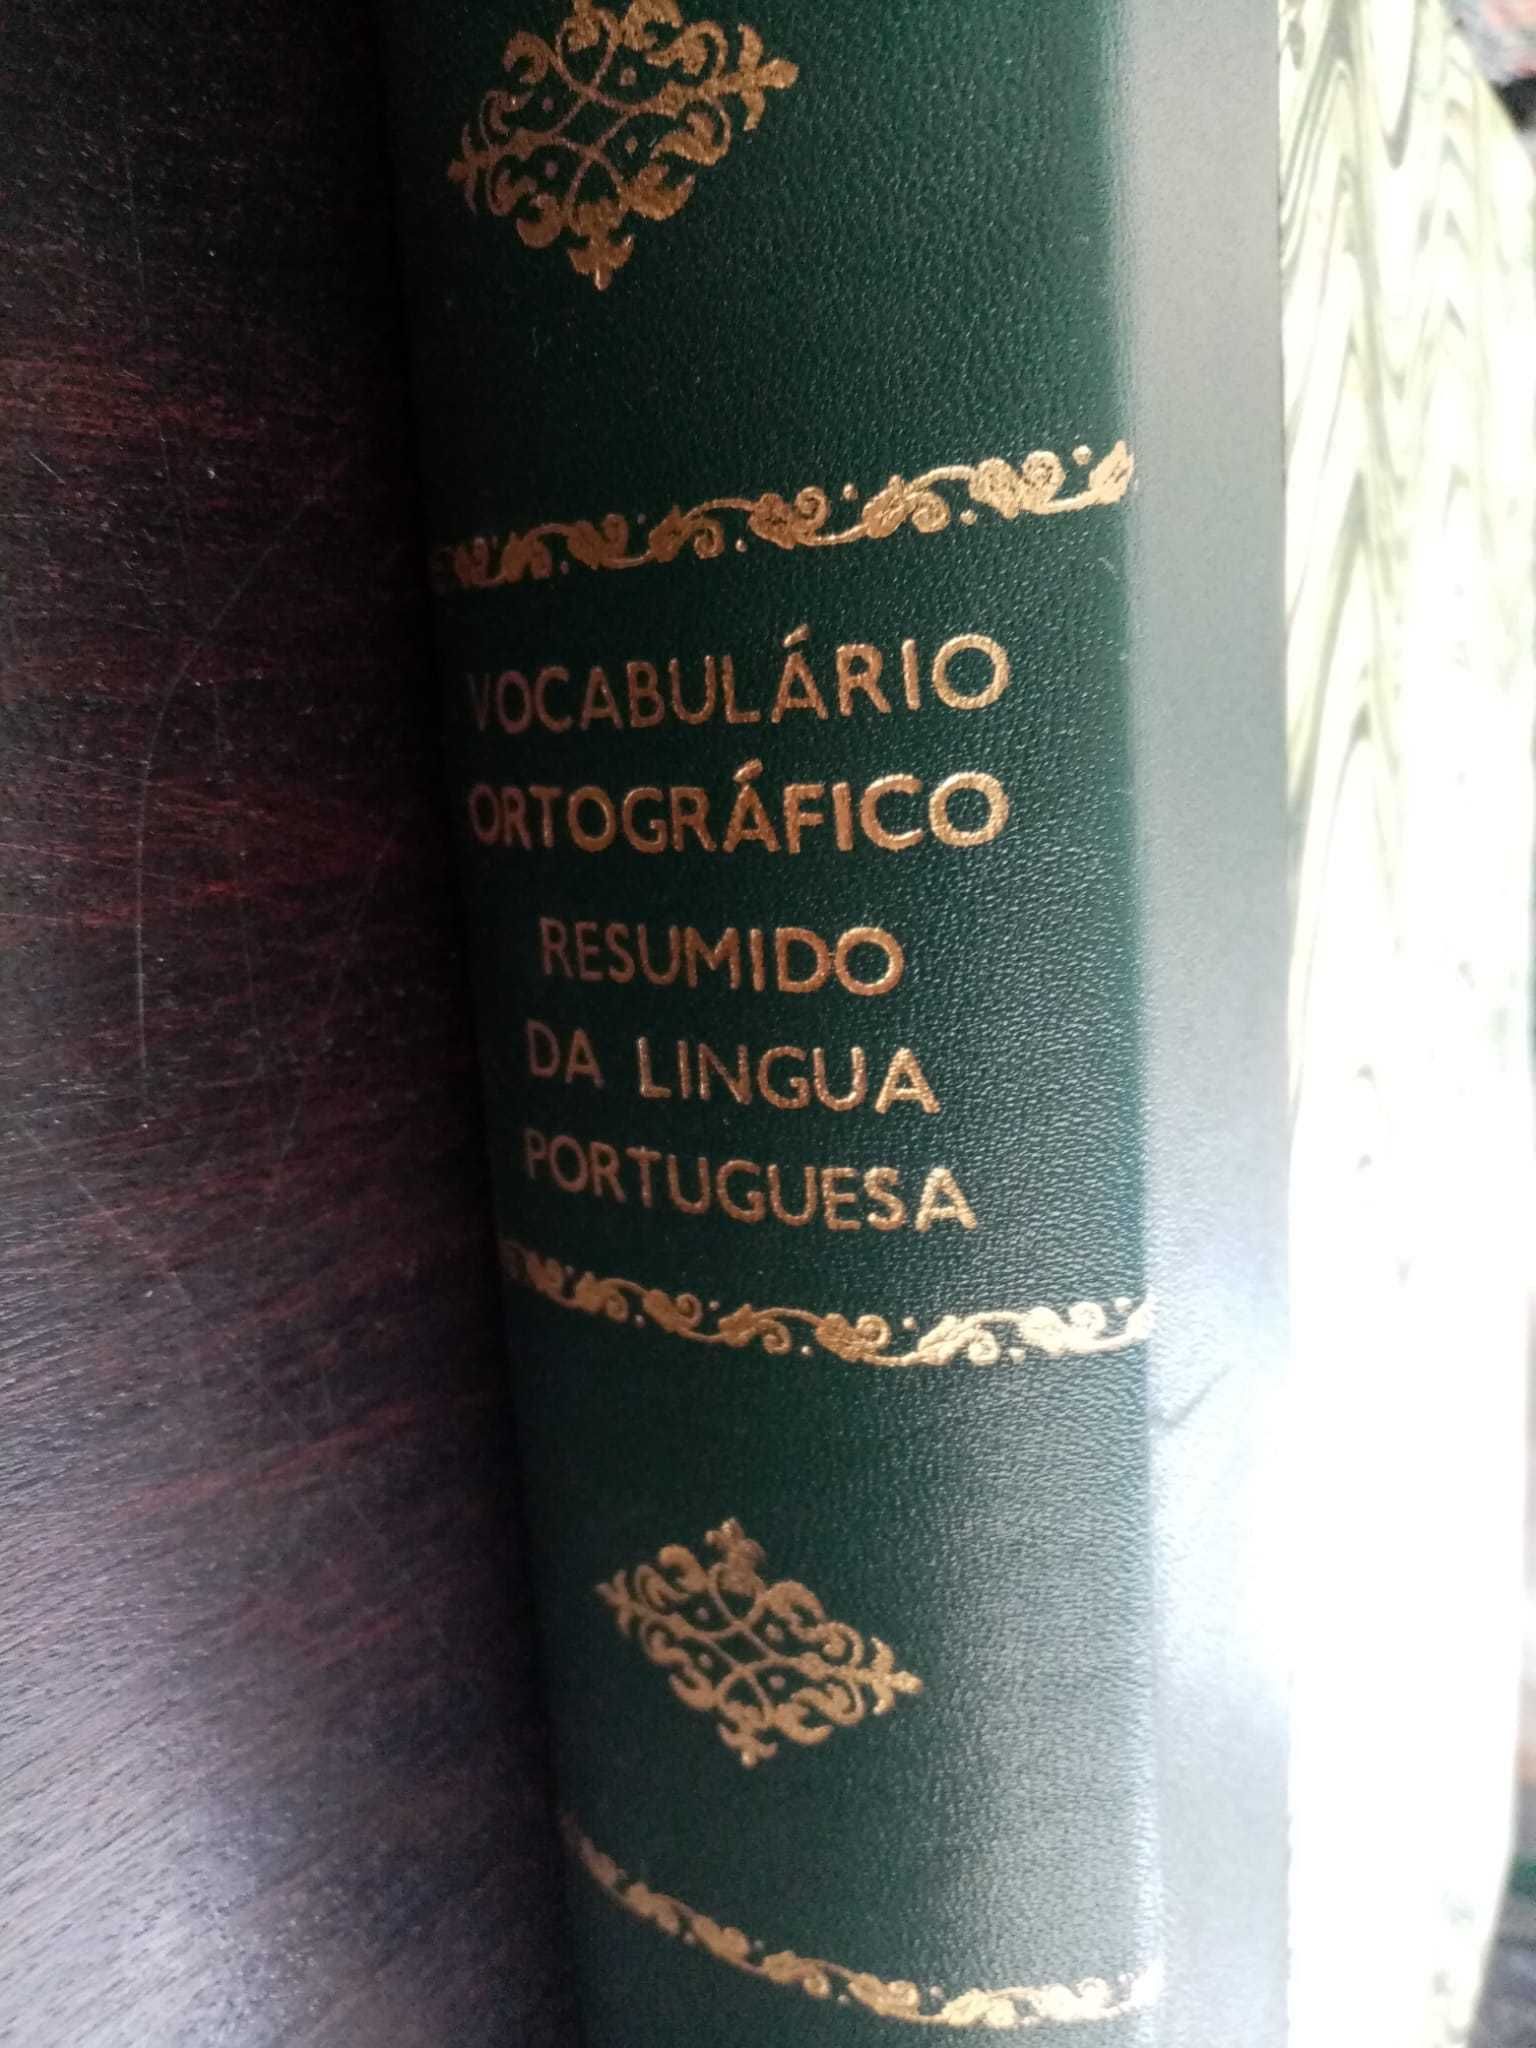 livro: “Vocabulário ortográfico resumido da língua portuguesa”